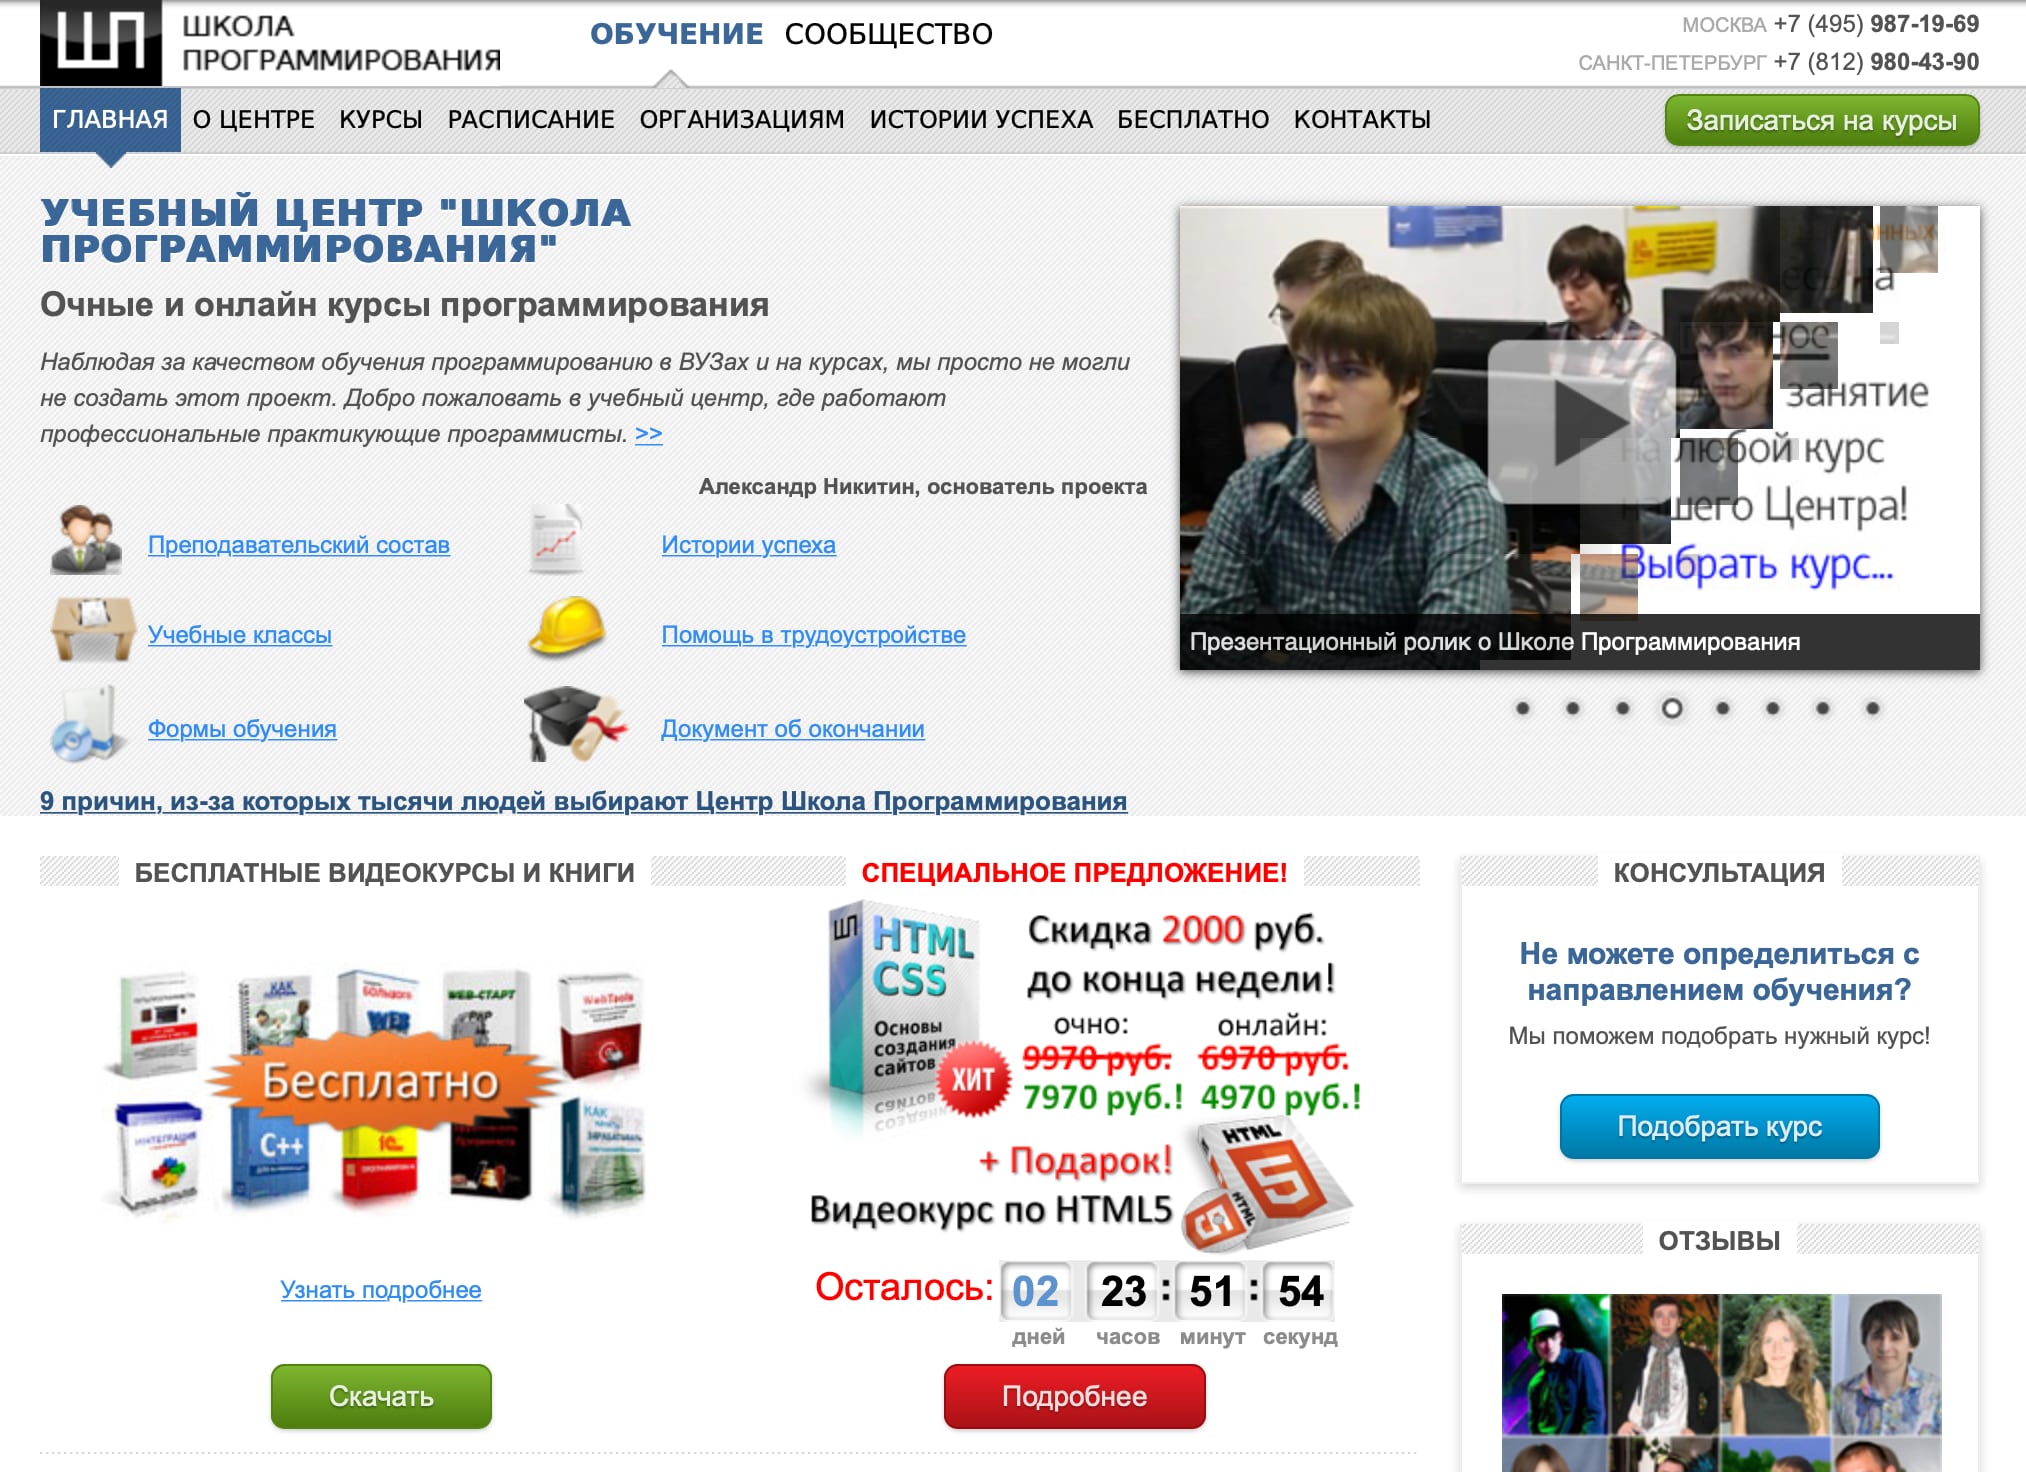 Главная страница «Школы Программирования», proglive.ru.
Как и всегда, выручает web.archive.org